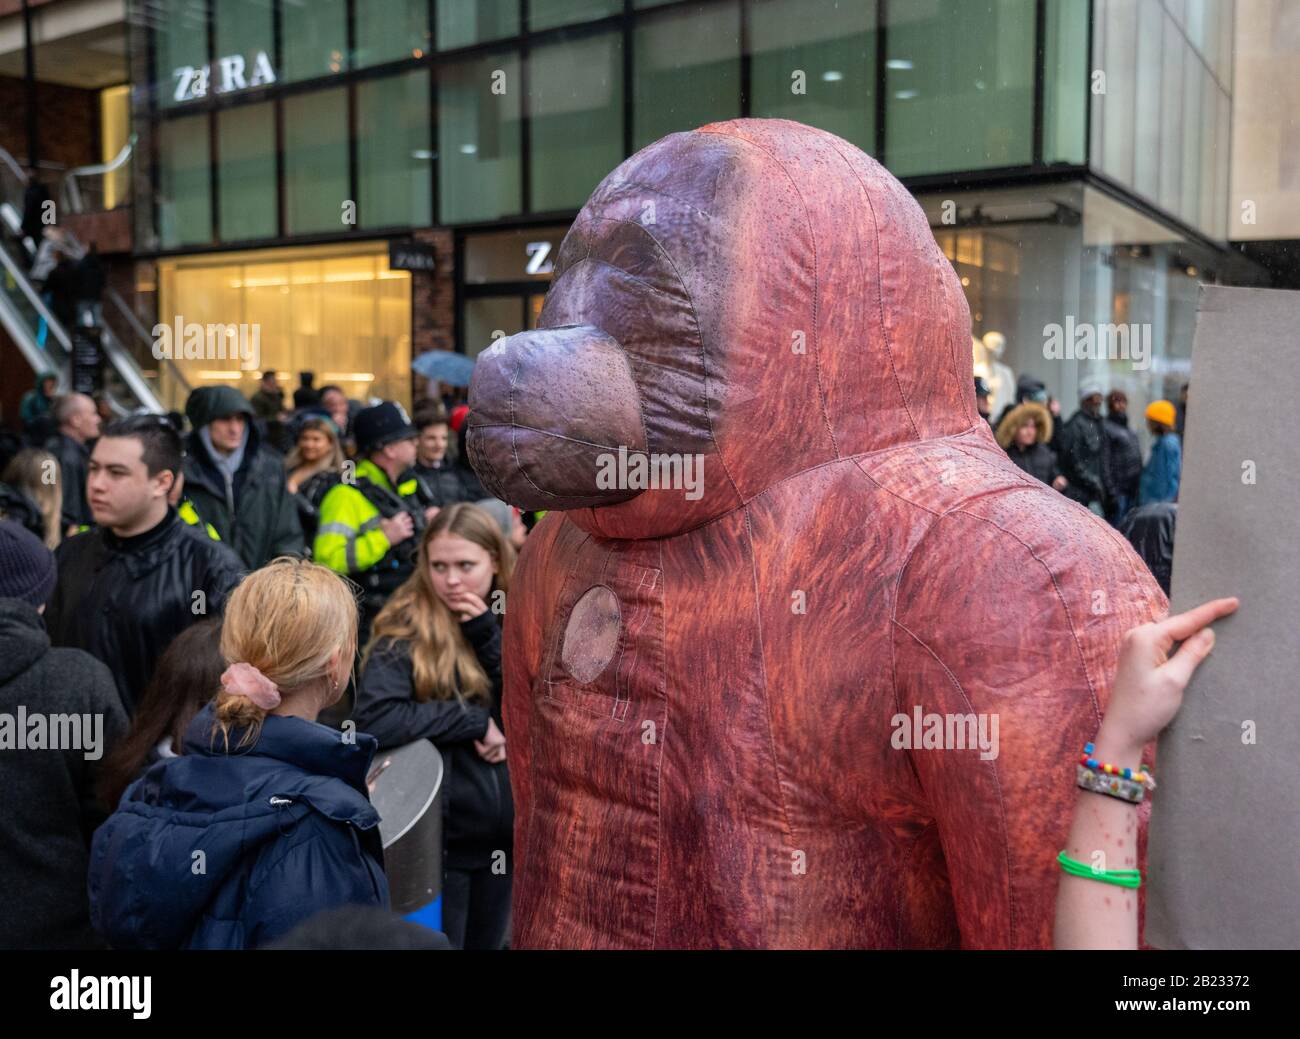 Gorilla gonfiabile a marzo per il clima e lo sciopero della scuola a Bristol UK il 28th febbraio 2020 dopo aver sentito Greta Thumberg parlare su College Green Foto Stock